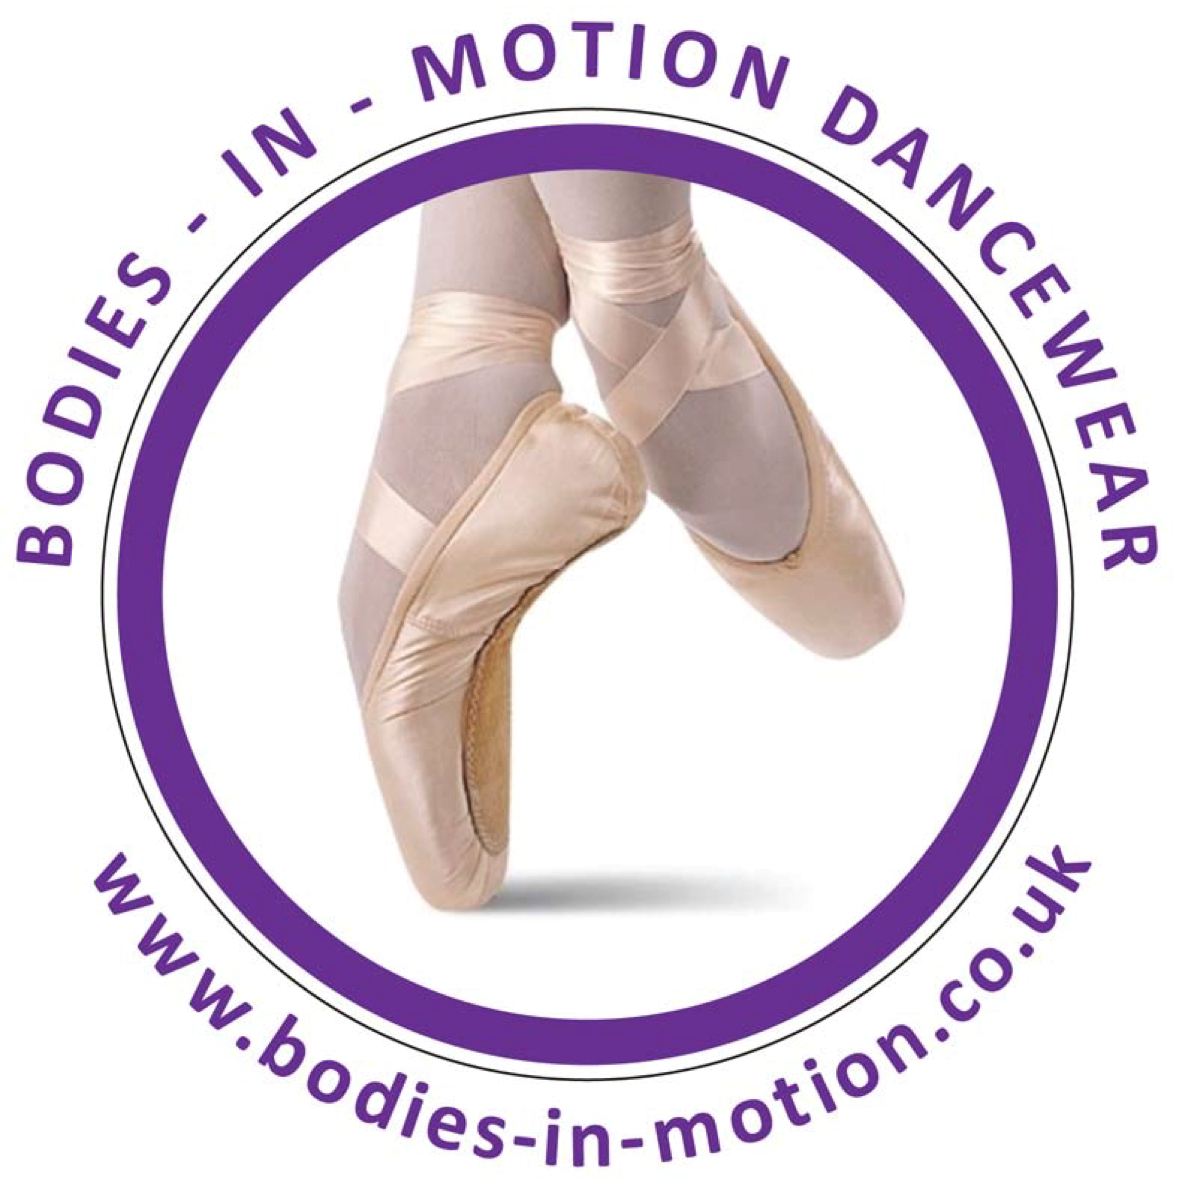 Bodies in Motion Dancewear – Bodies in Motion Dance Wear